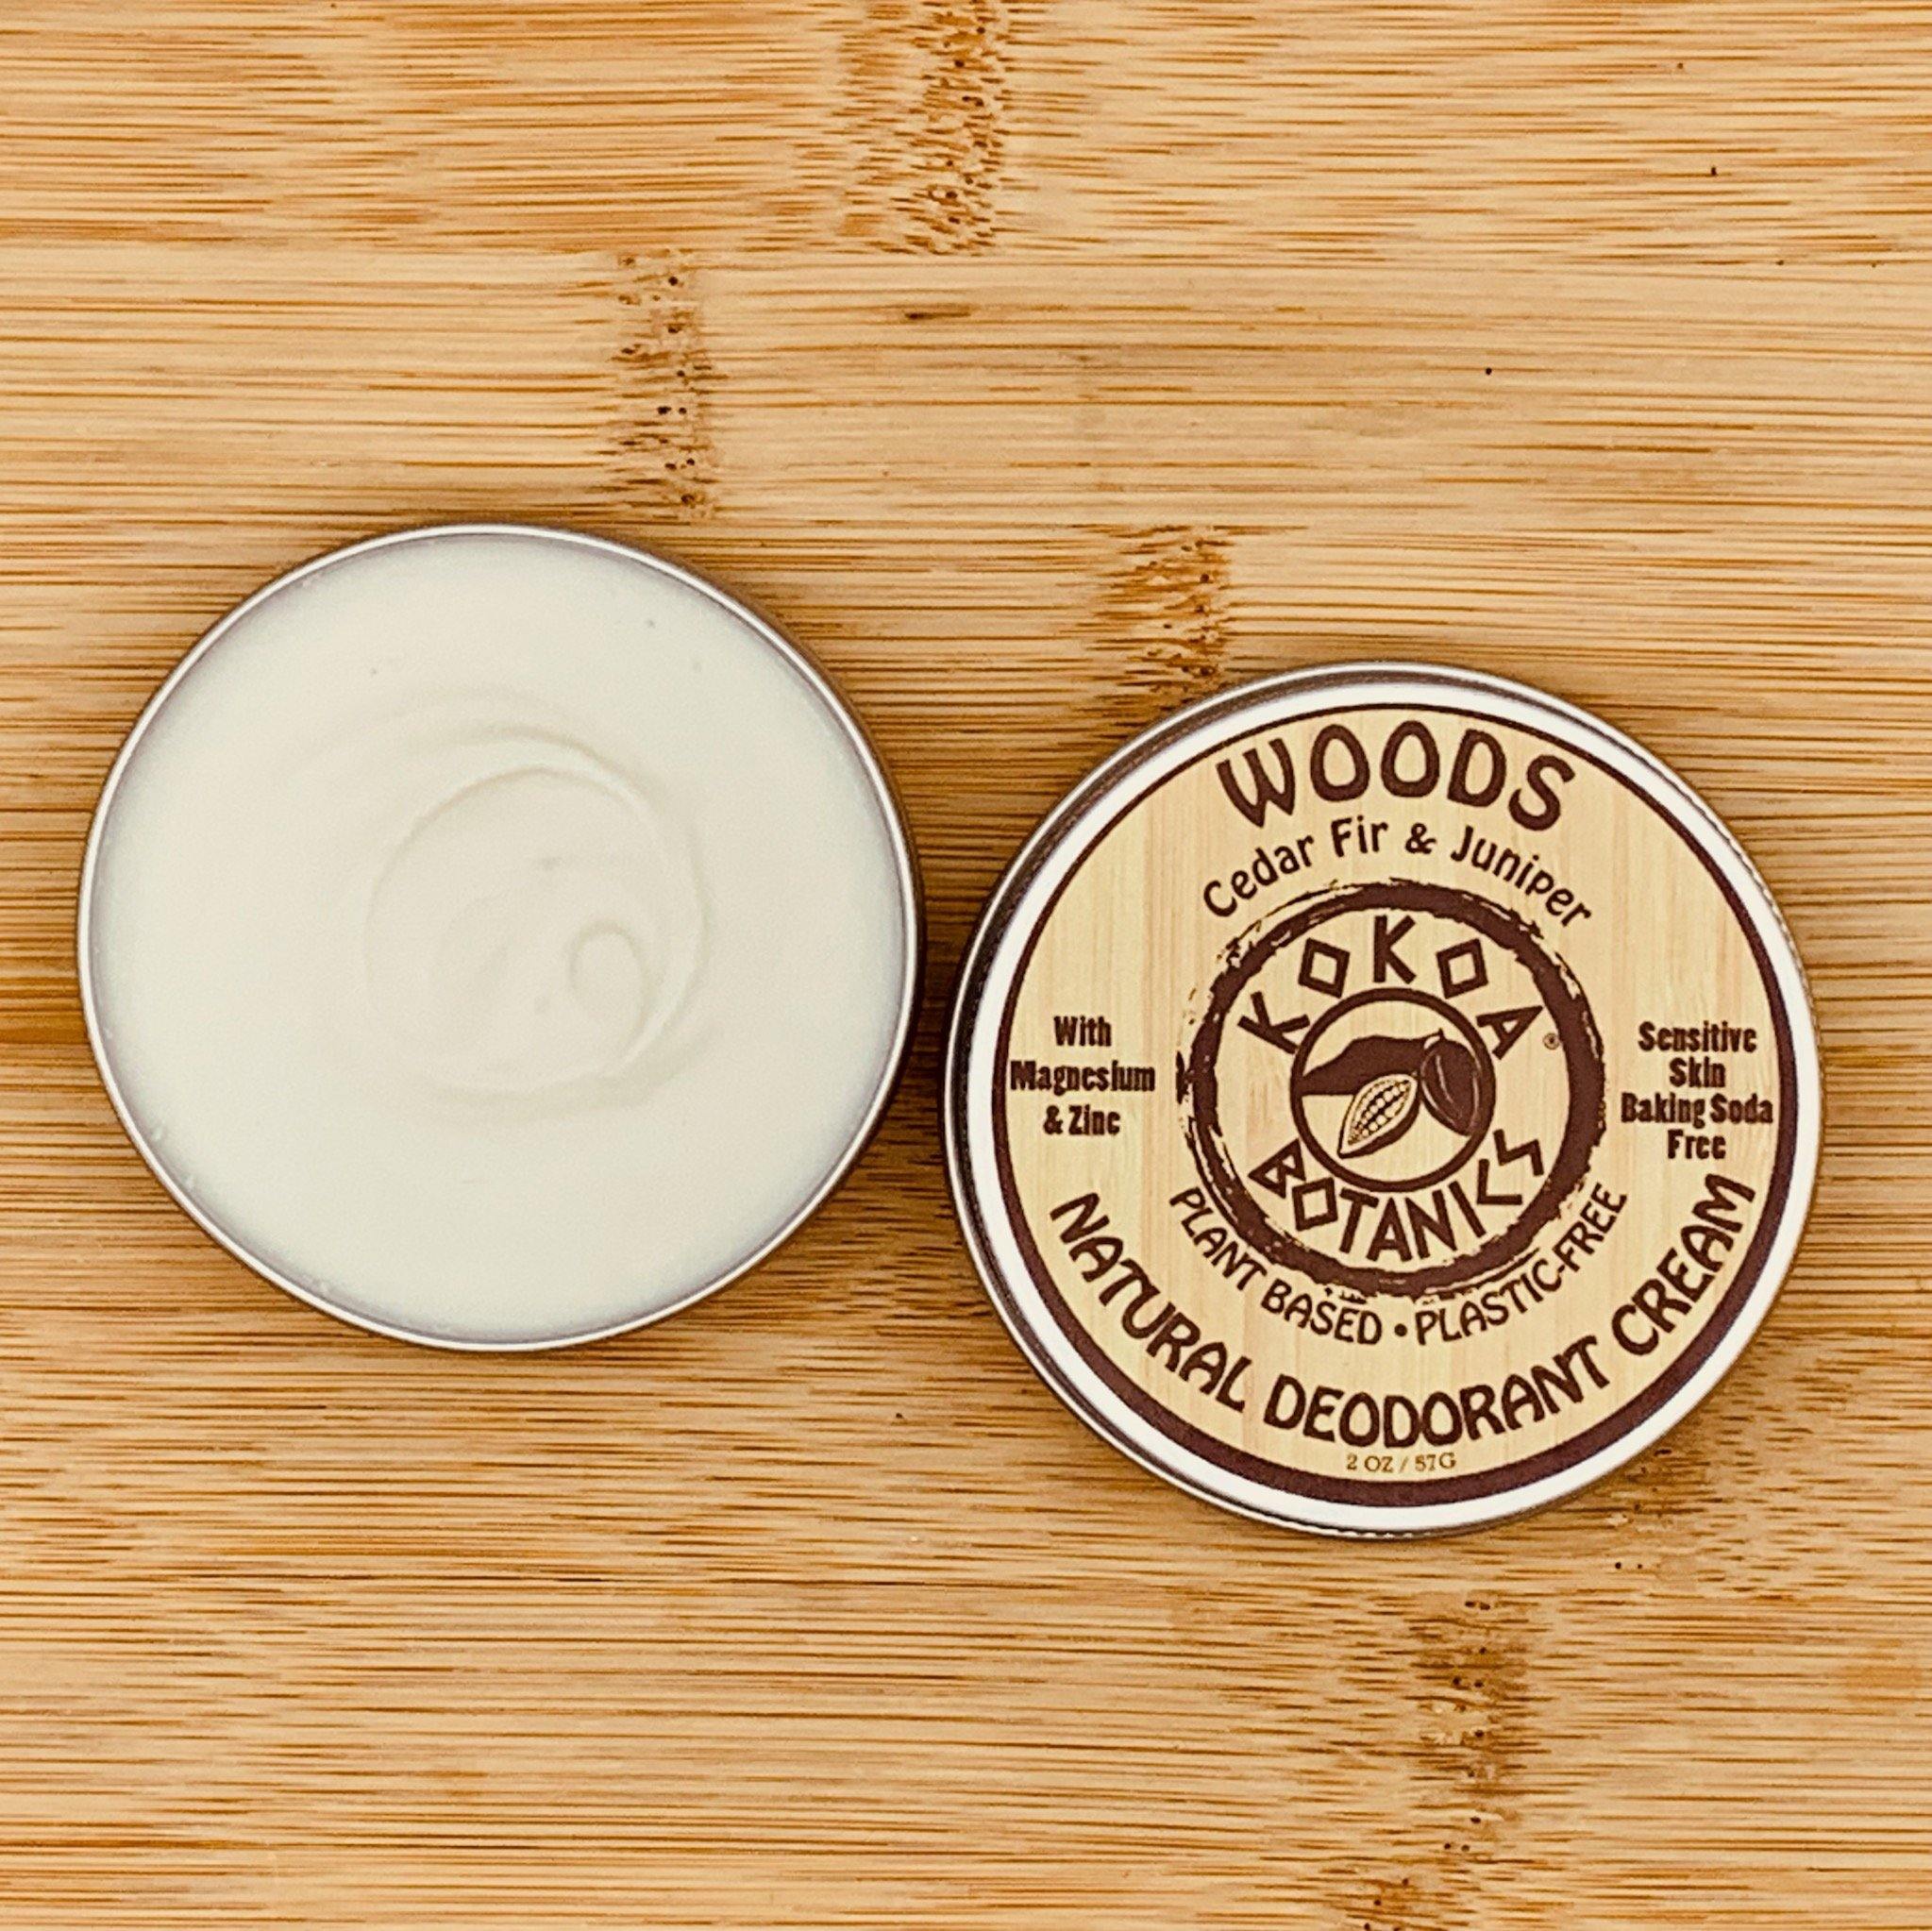 WOODS - Natural Deodorant Cream - Sensitive Skin – Baking Soda-Free 2 oz - kokoabotanics